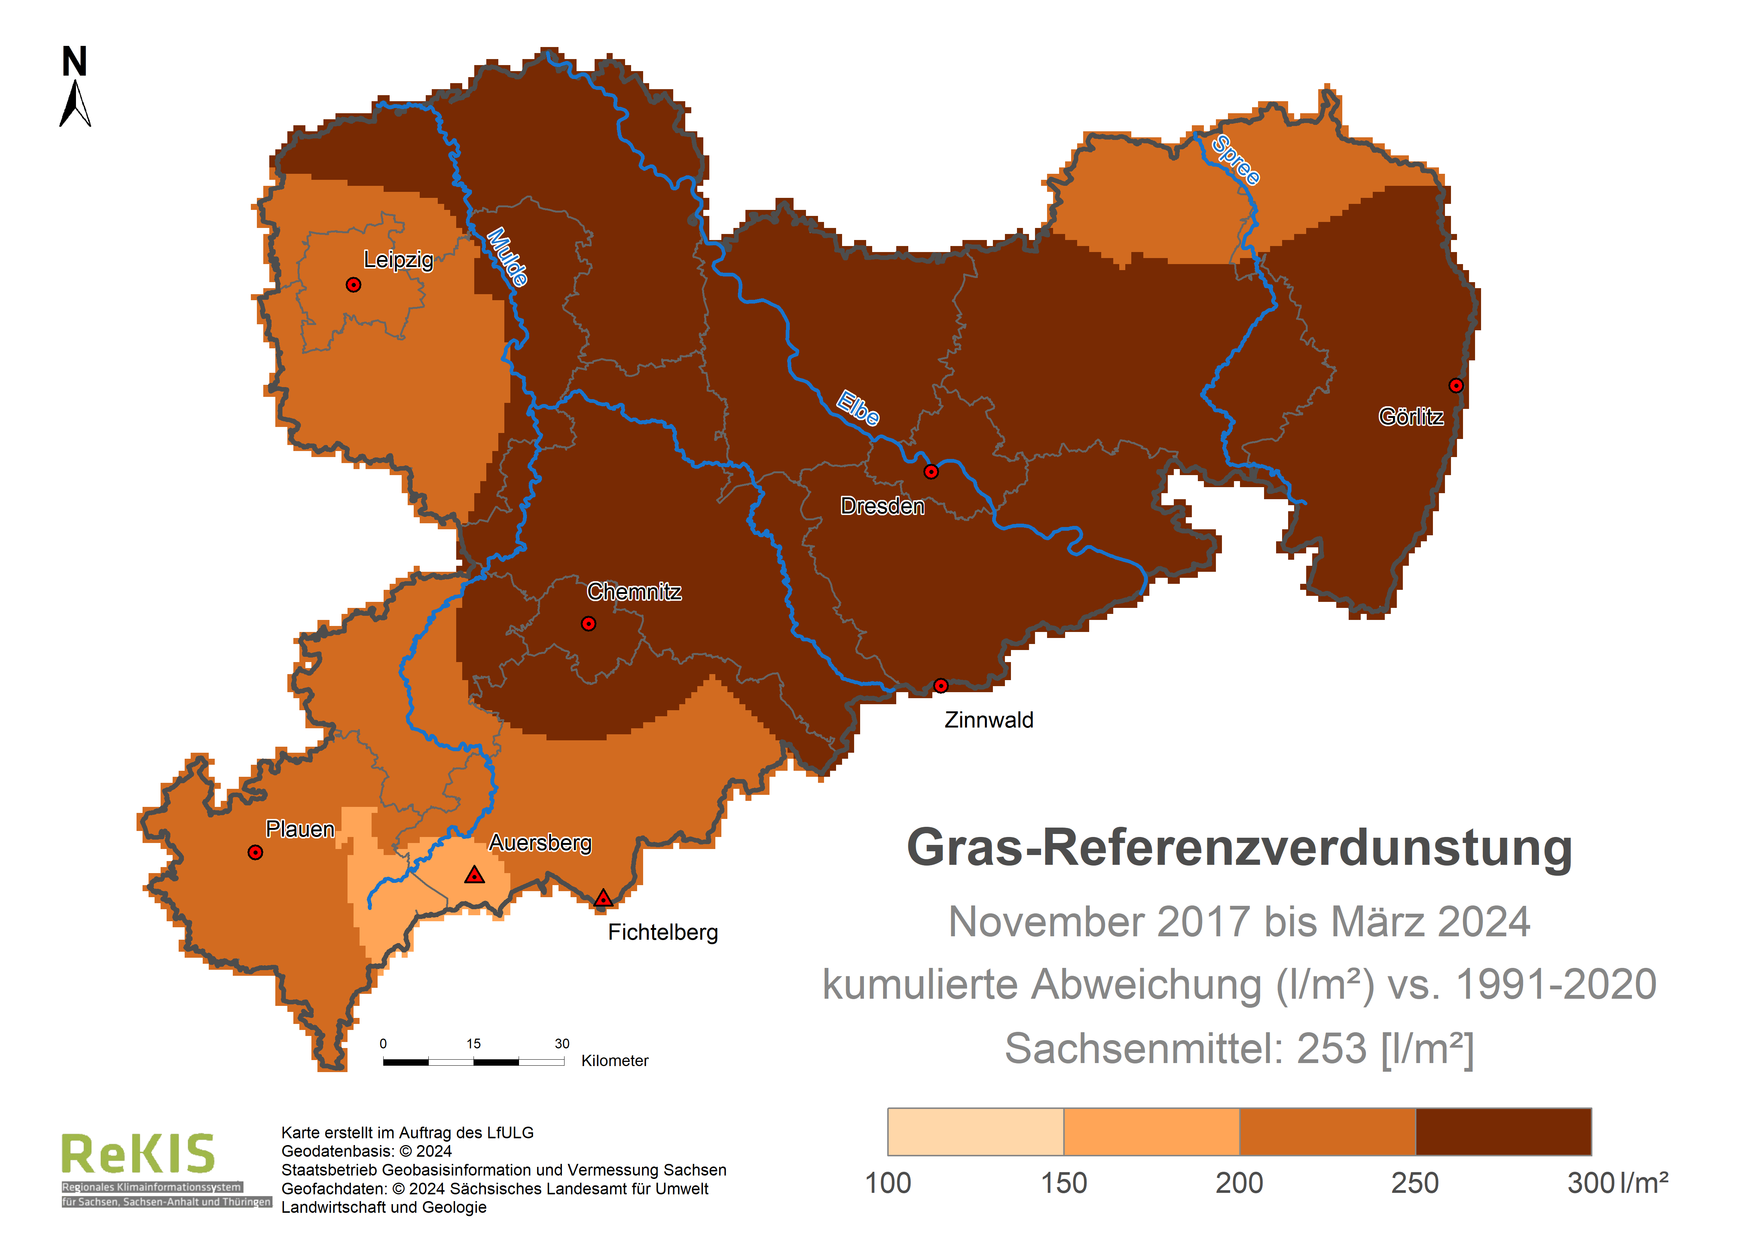 Karte Sachsen mit Darstellung der Gras-Referenzverdunstung im Vergleich zum Referenzzeitraum 1991 bis 2020